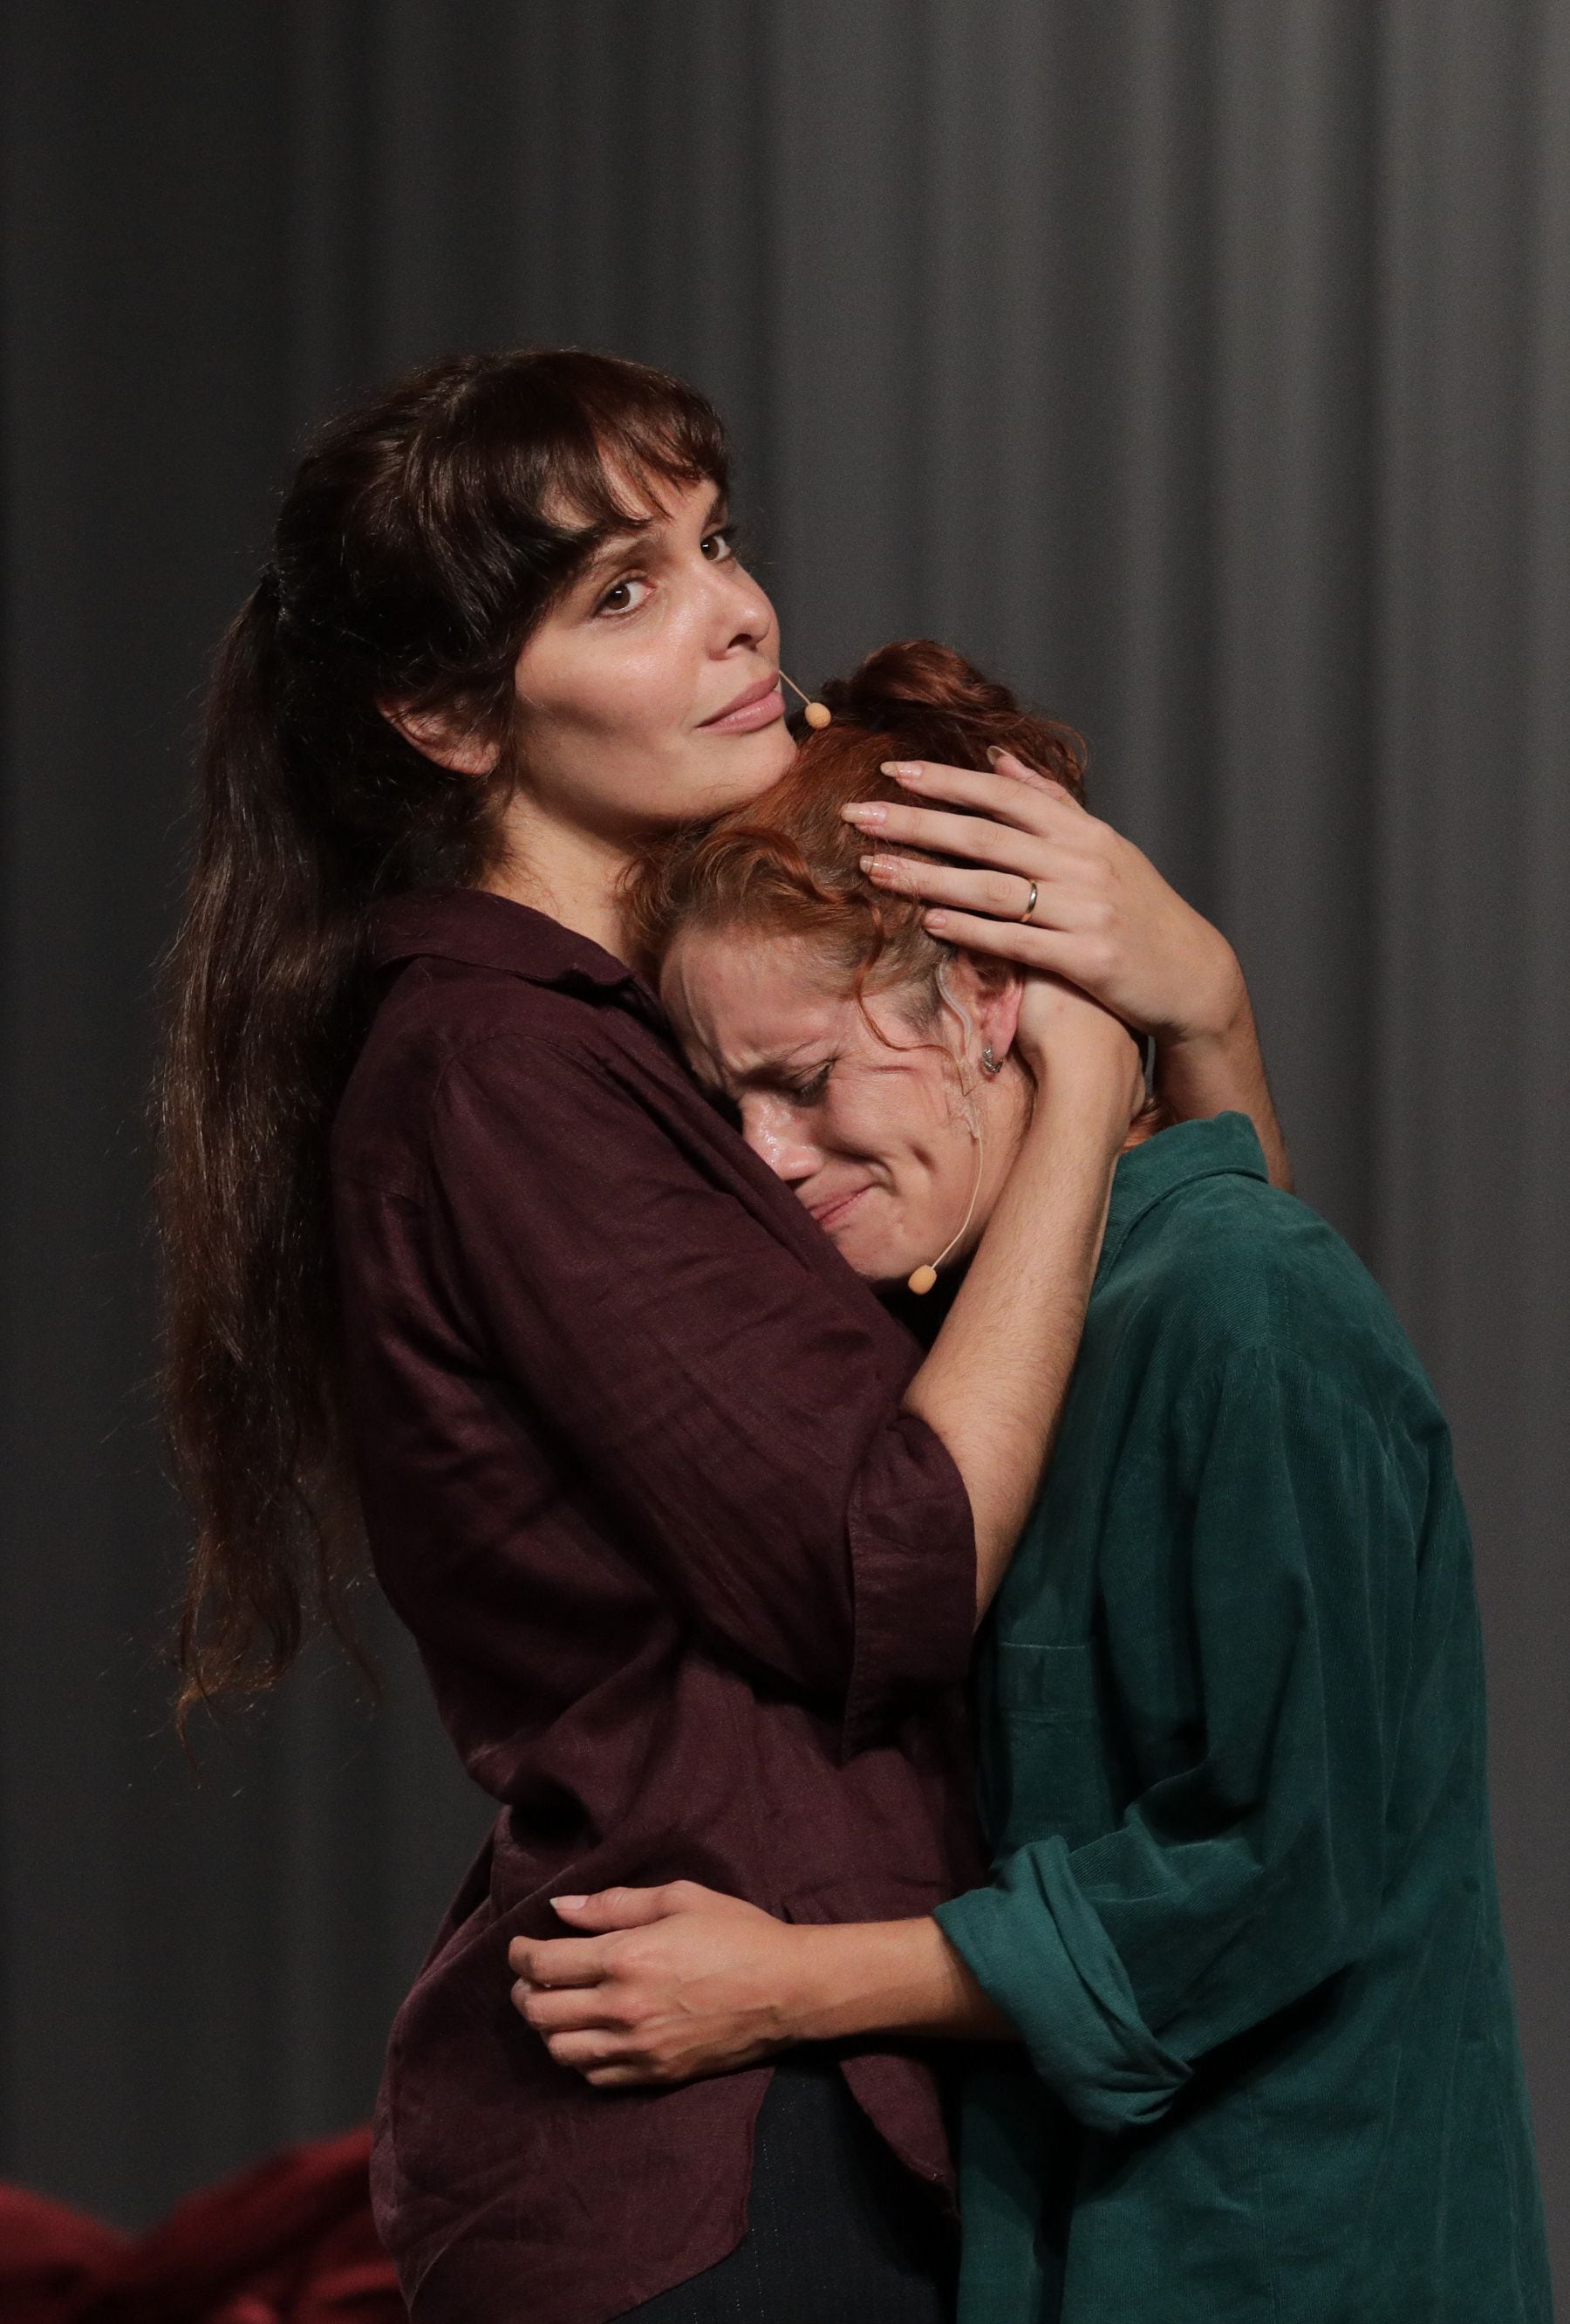 Amaranta Kun y Macla Yamada en uno de los momentos más emotivos de "Una vida". El dramaturgo francés Laurent Gutmann dirige la obra en el teatro de la Alianza Francesa de Lima.